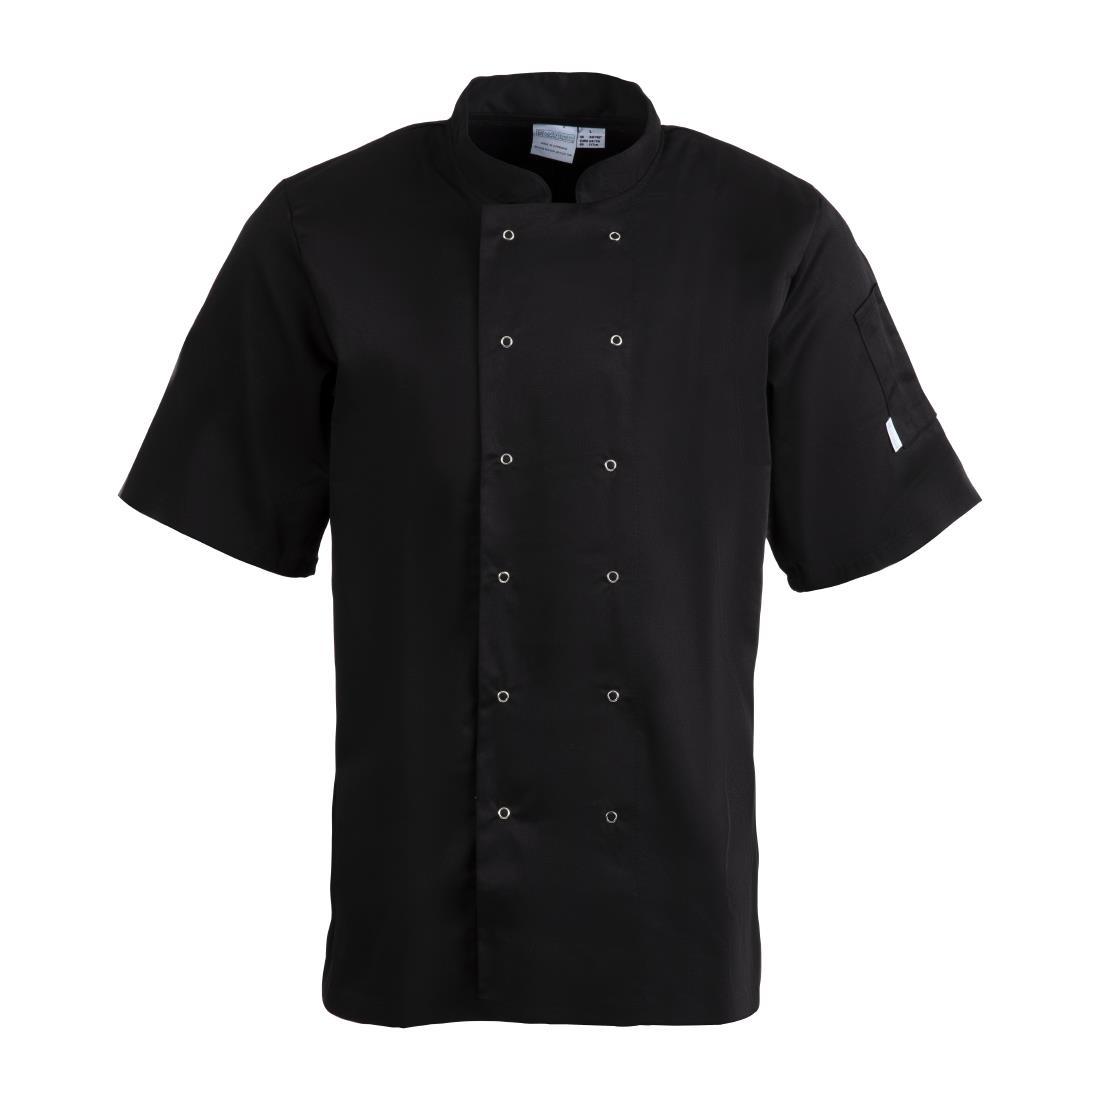 Whites Vegas Unisex Chefs Jacket Short Sleeve Black 3XL - A439-3XL  - 1